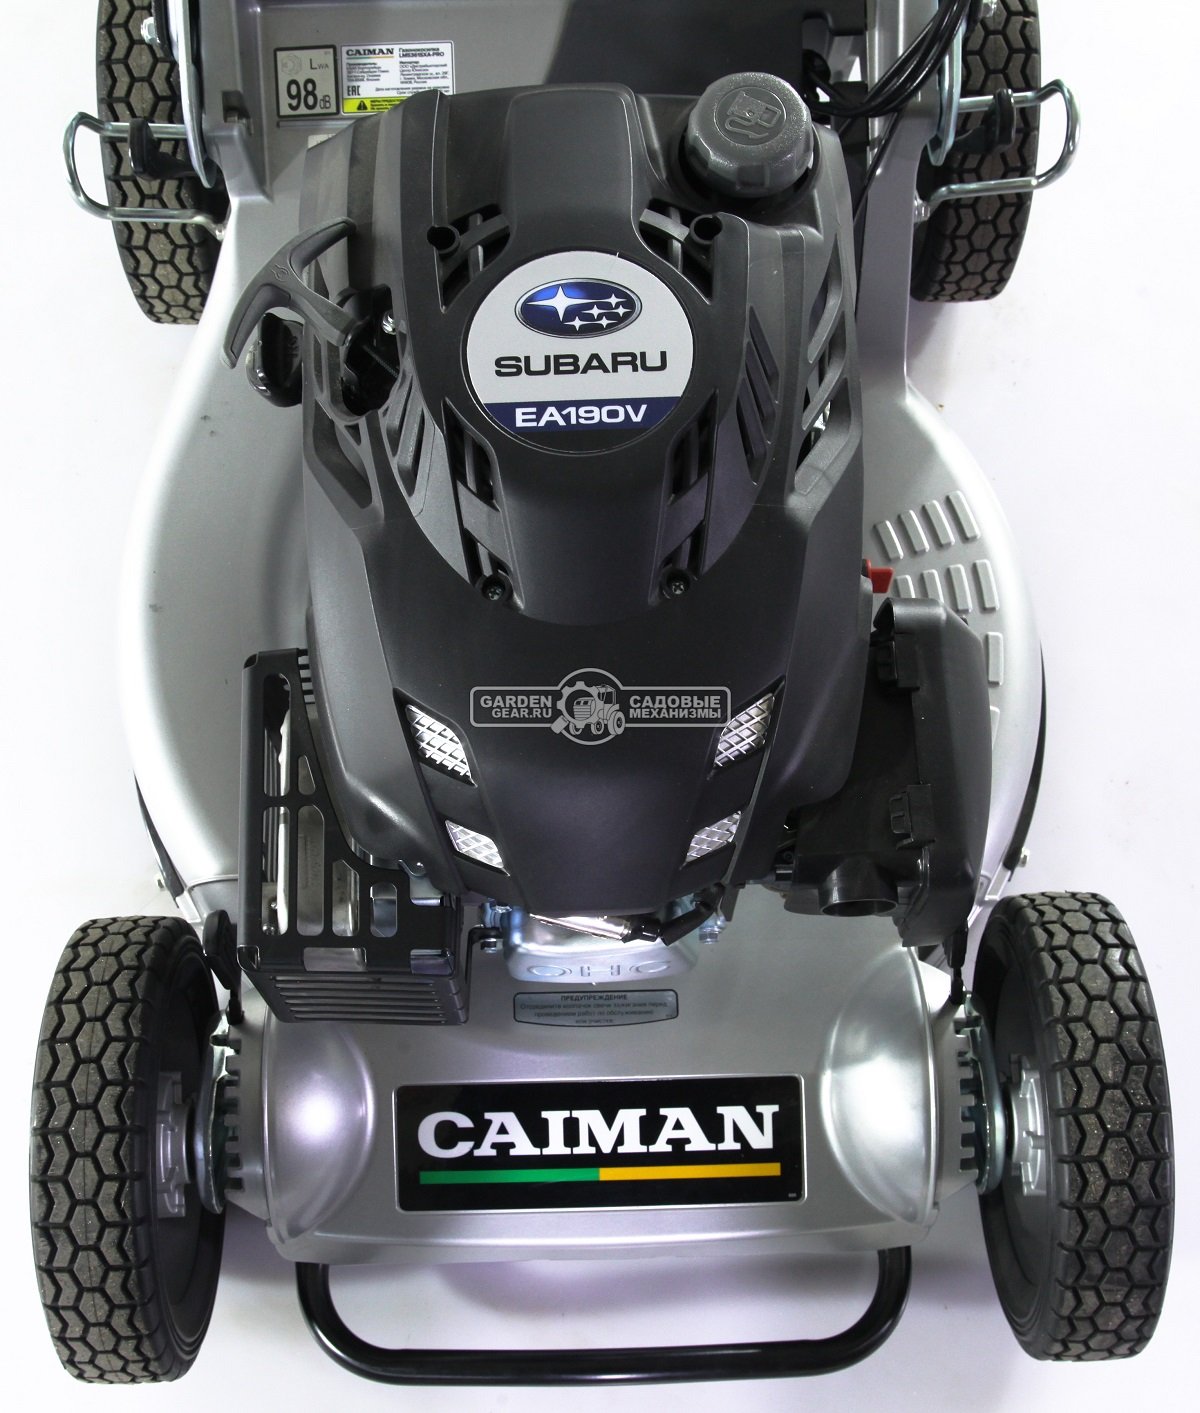 Газонокосилка бензиновая профессиональная Caiman LM5361SXA-PRO (JPN, 53 см, Subaru EA190V, алюминий, вариатор, тормоз ножа, 75 л, 53 кг)